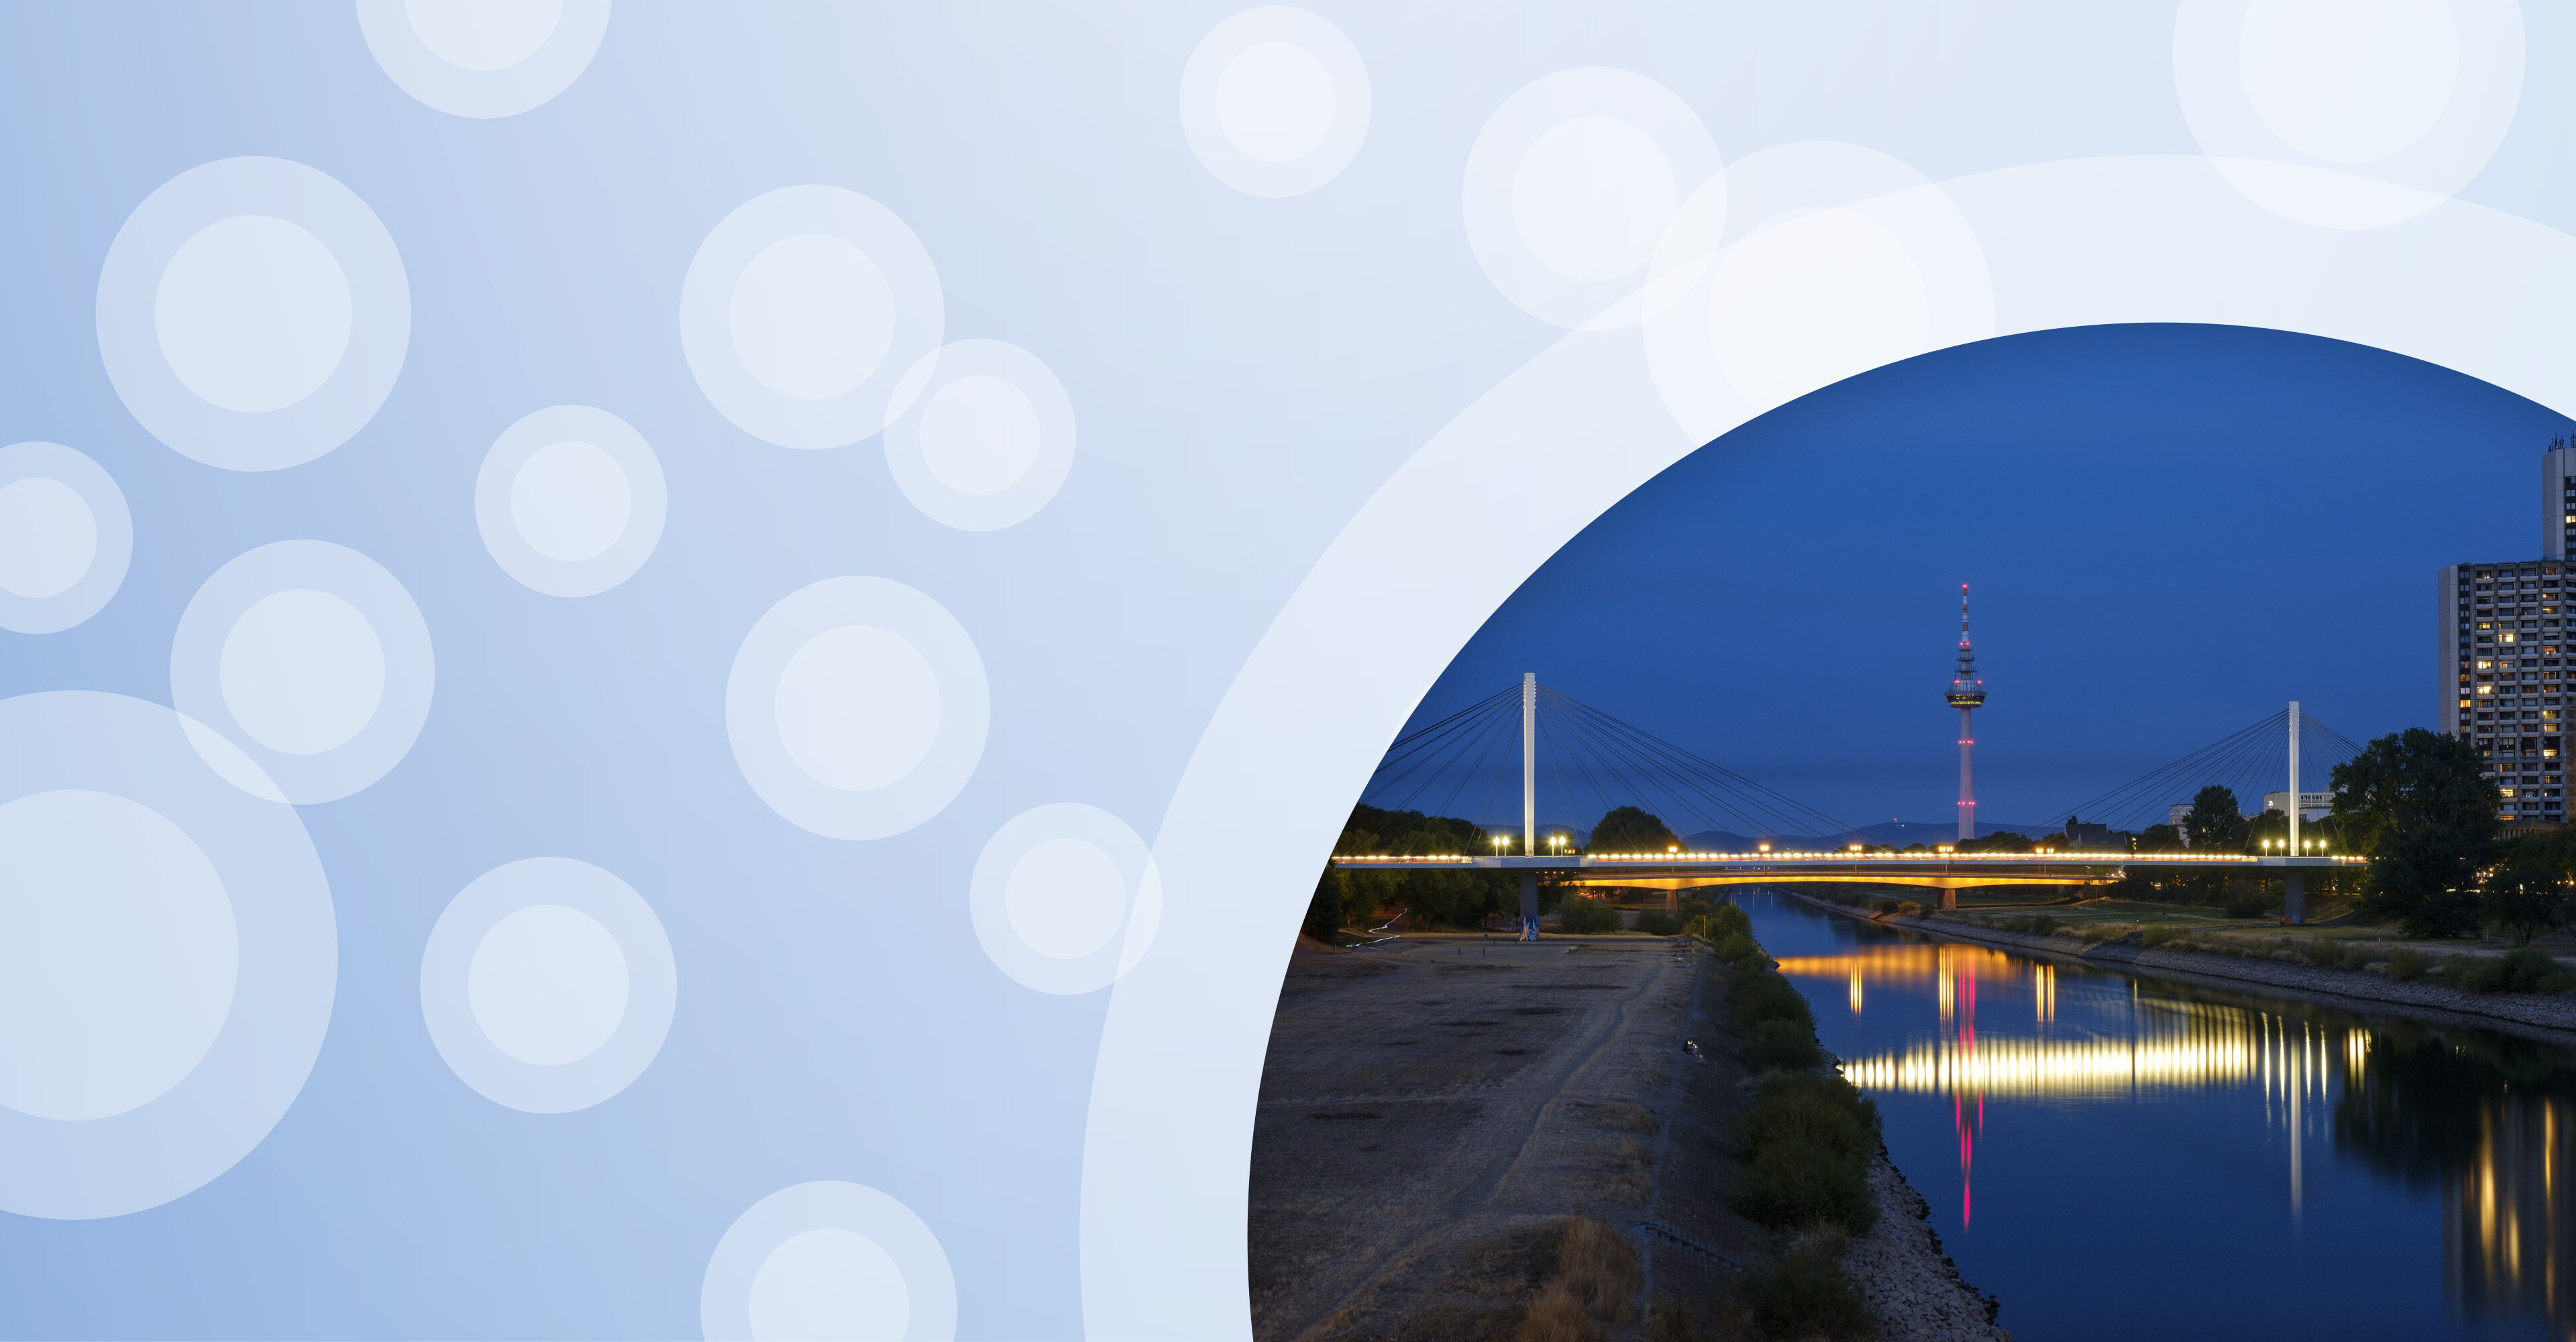 Regionalgrafik in hellblau mit halbtransparenten weißen Kreisen und Foto von Neckarbrücke in Mannheim